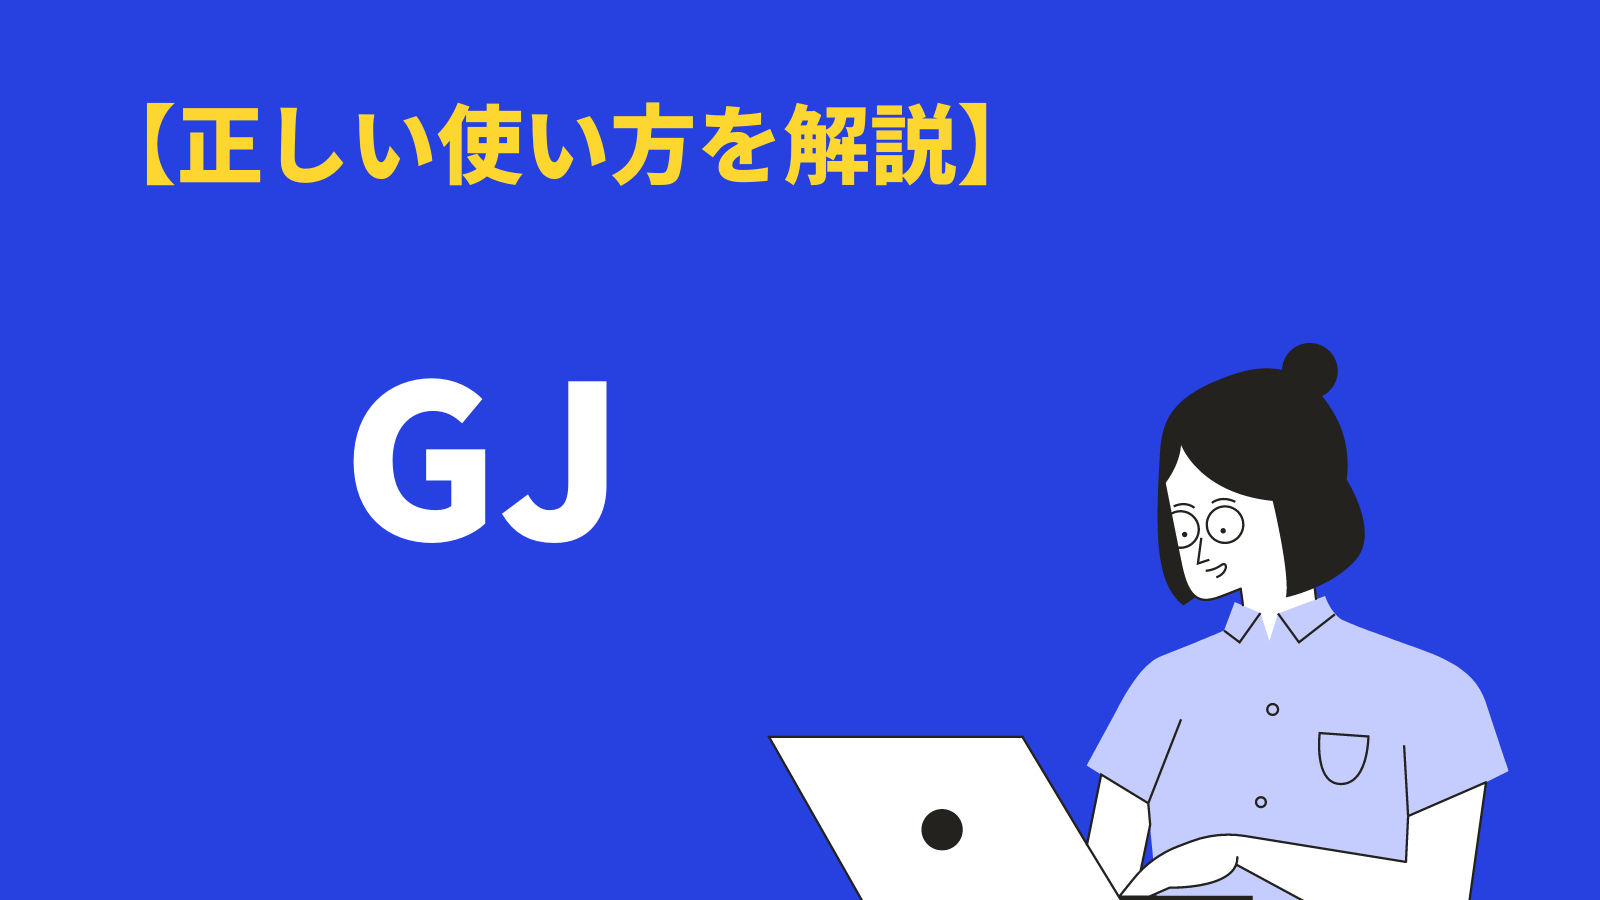 「GJ」の意味と使い方とは？類語や対義語、「ネットスラング」についても解説